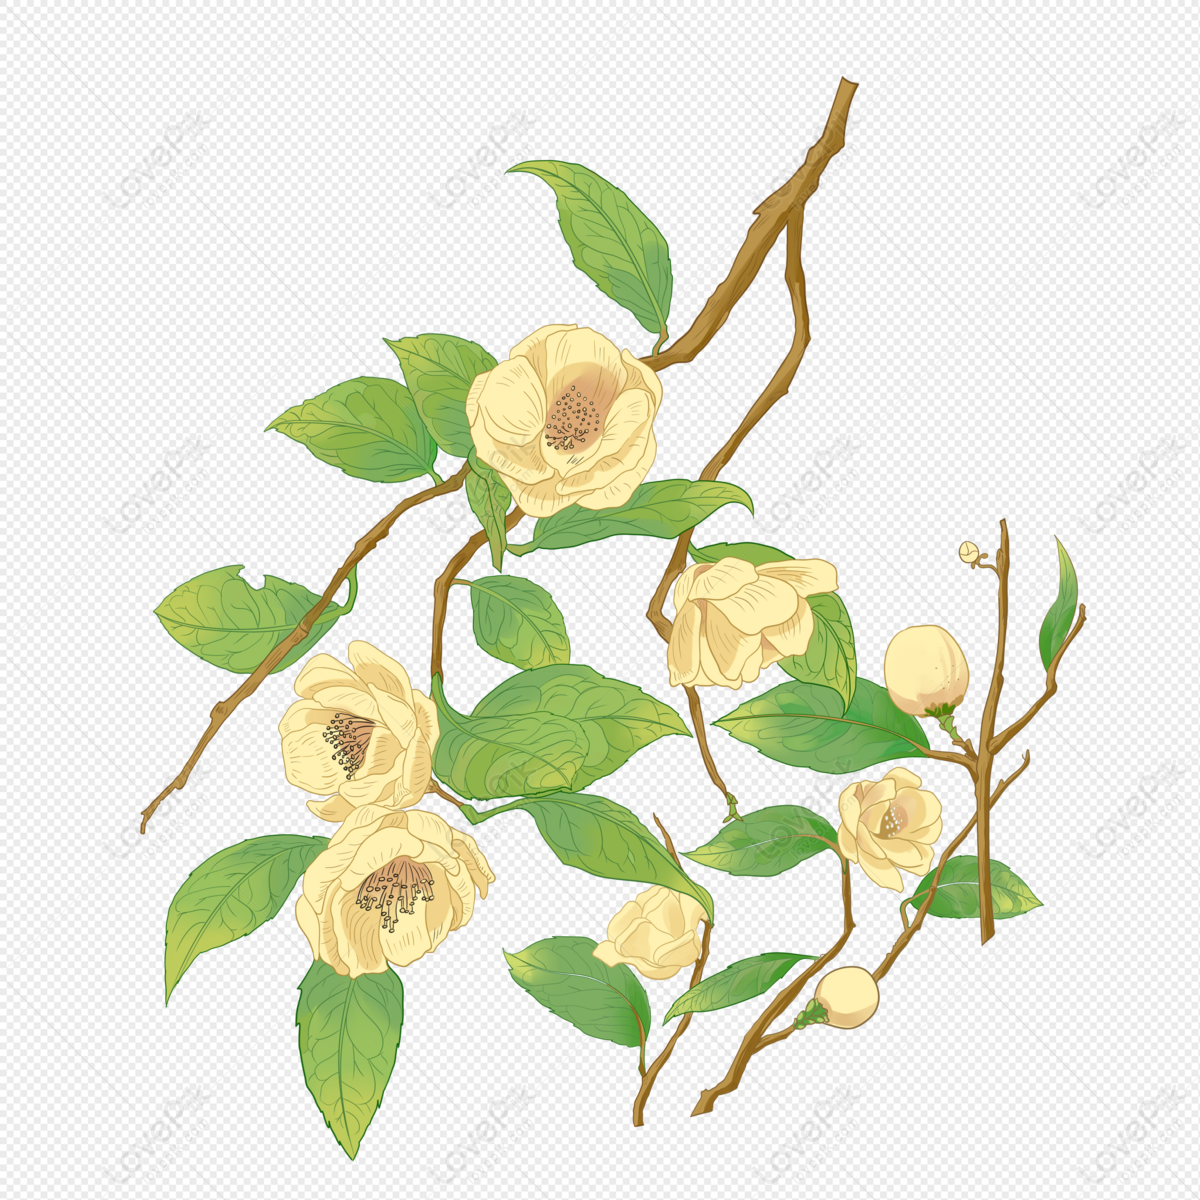 Trà hoa: Hãy khám phá hương vị độc đáo của trà hoa cùng với những bông hoa tươi tắn, nhẹ nhàng như sương mai. Được làm từ những loại hoa thơm ngon như hồng, jasmine hay lavender, trà hoa không chỉ giúp thư giãn tinh thần mà còn có nhiều lợi ích cho sức khỏe.